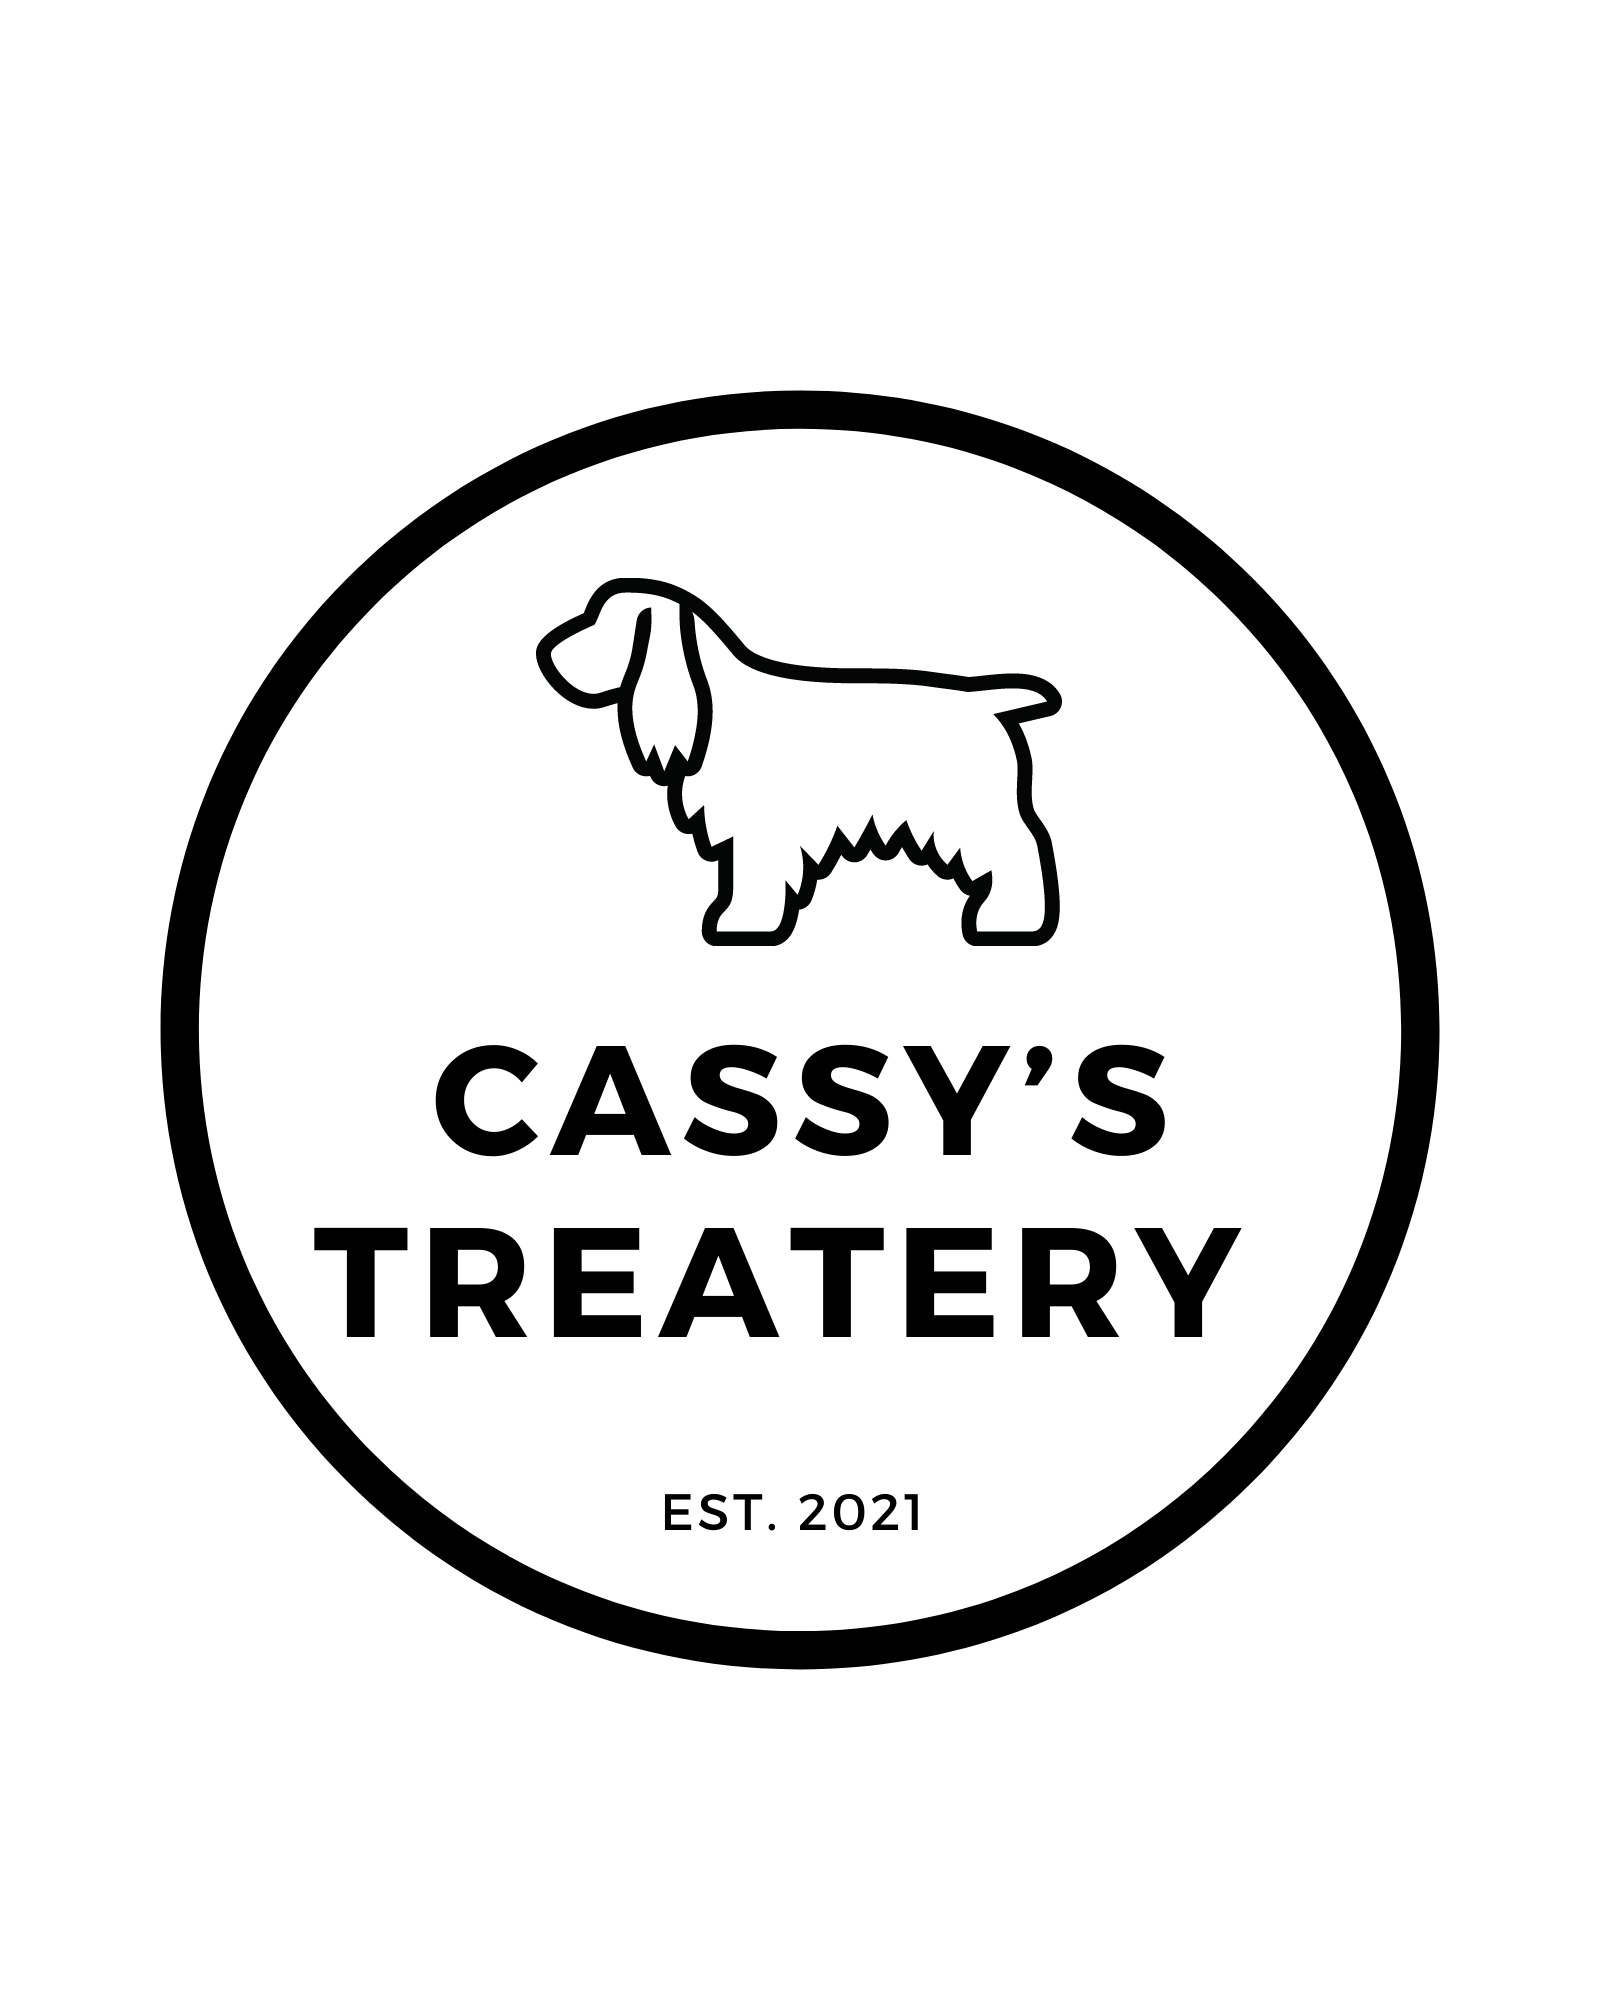 Cassy's Treatery